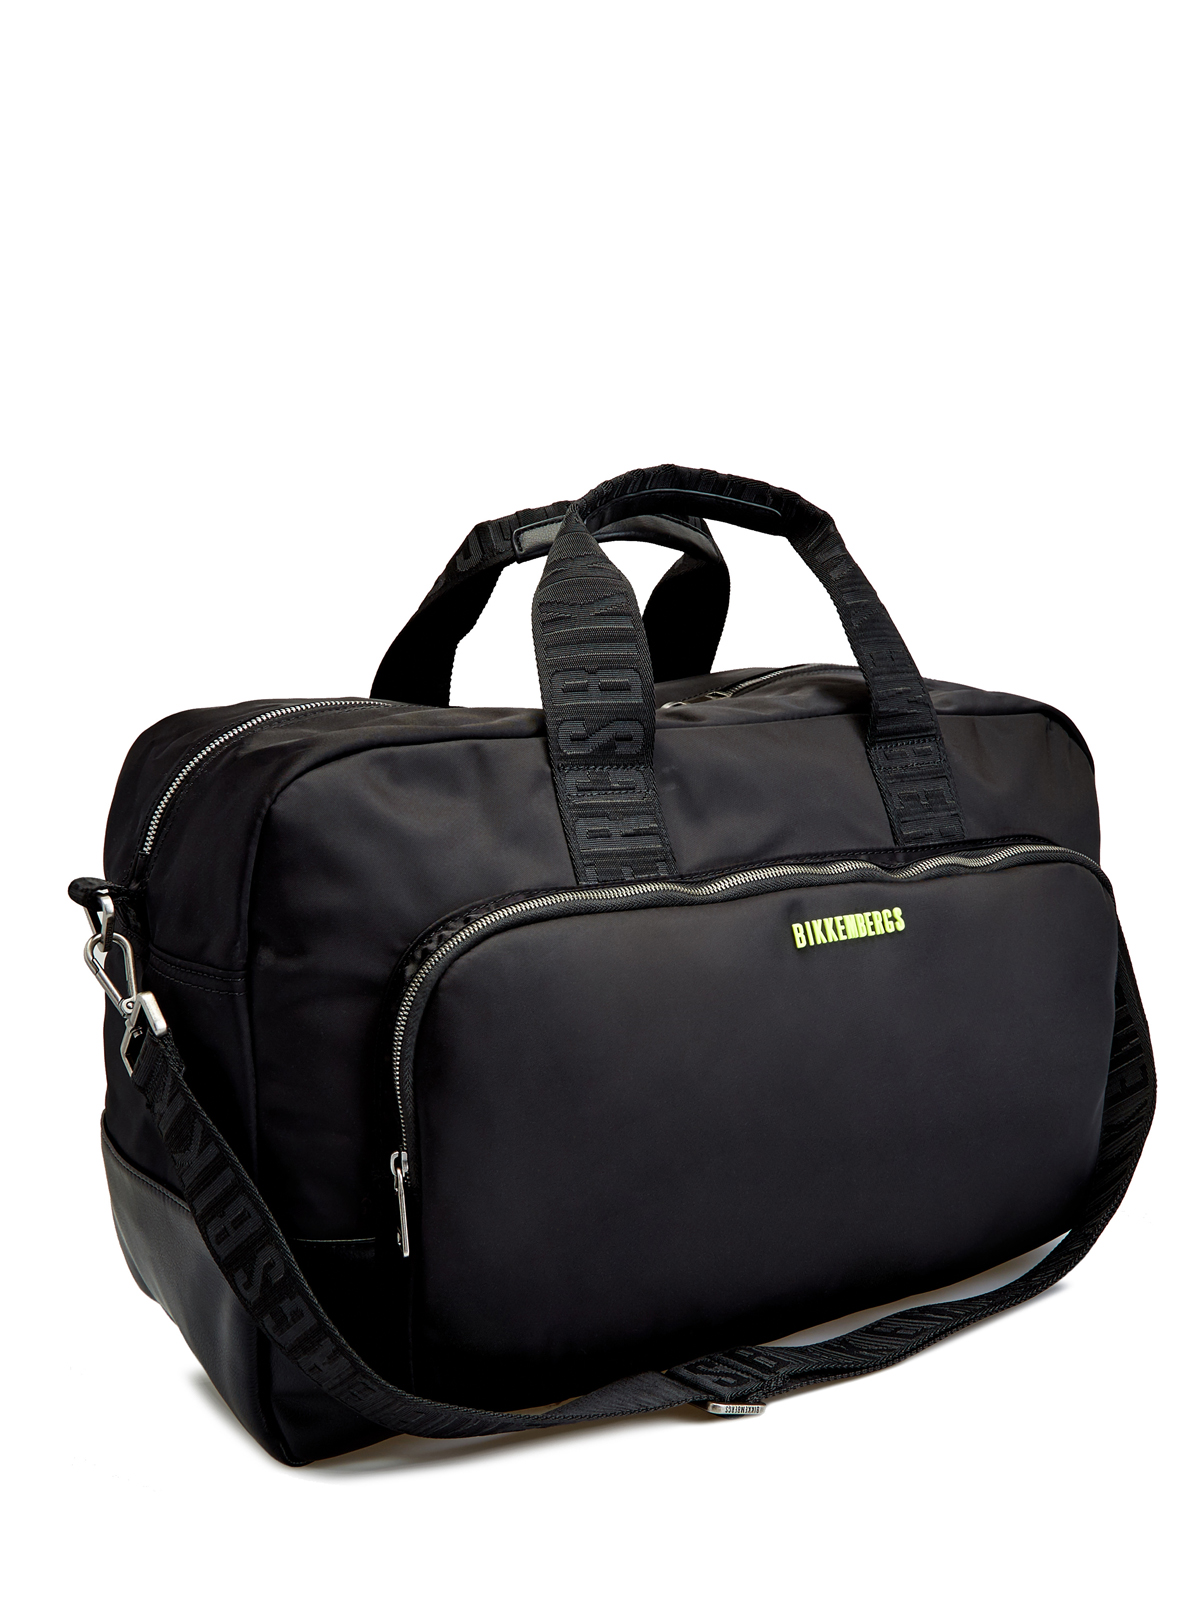 Дорожная сумка Next 3.0 в спортивном стиле BIKKEMBERGS, цвет черный, размер M - фото 3